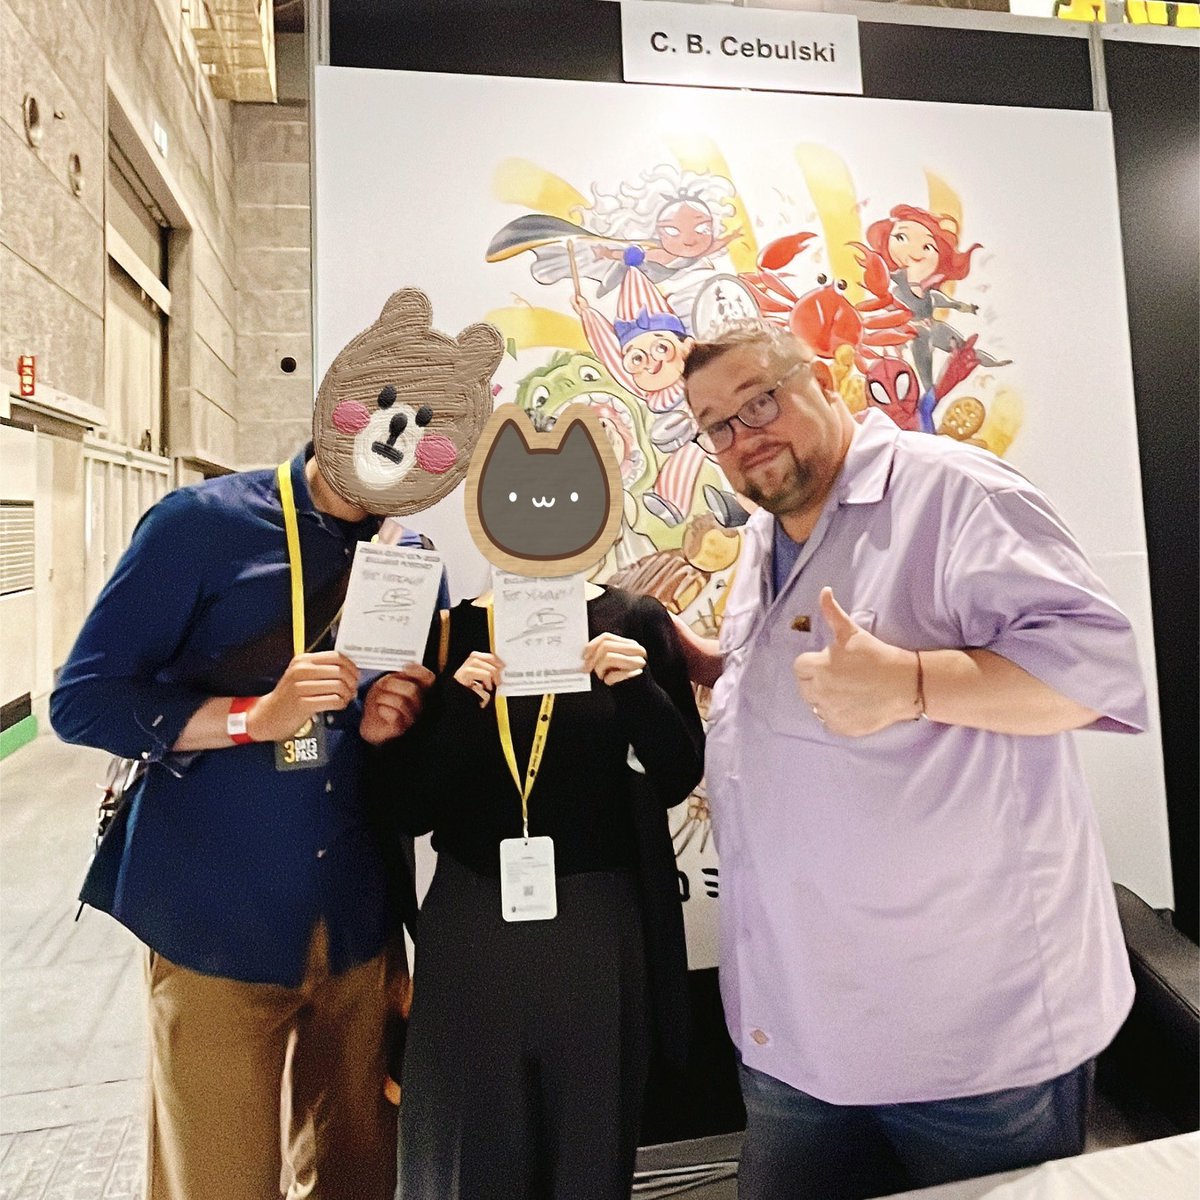 大阪でコミコンが開催されてホンマに良かった😸最高のゴールデンウィークでした🌸

ありがとう✨また来てね❗️

#OsakaComicon 
#Osaka
#ミシャコリンズ
#オーランドブルーム

@TokyoComicCon 
@mishacollins